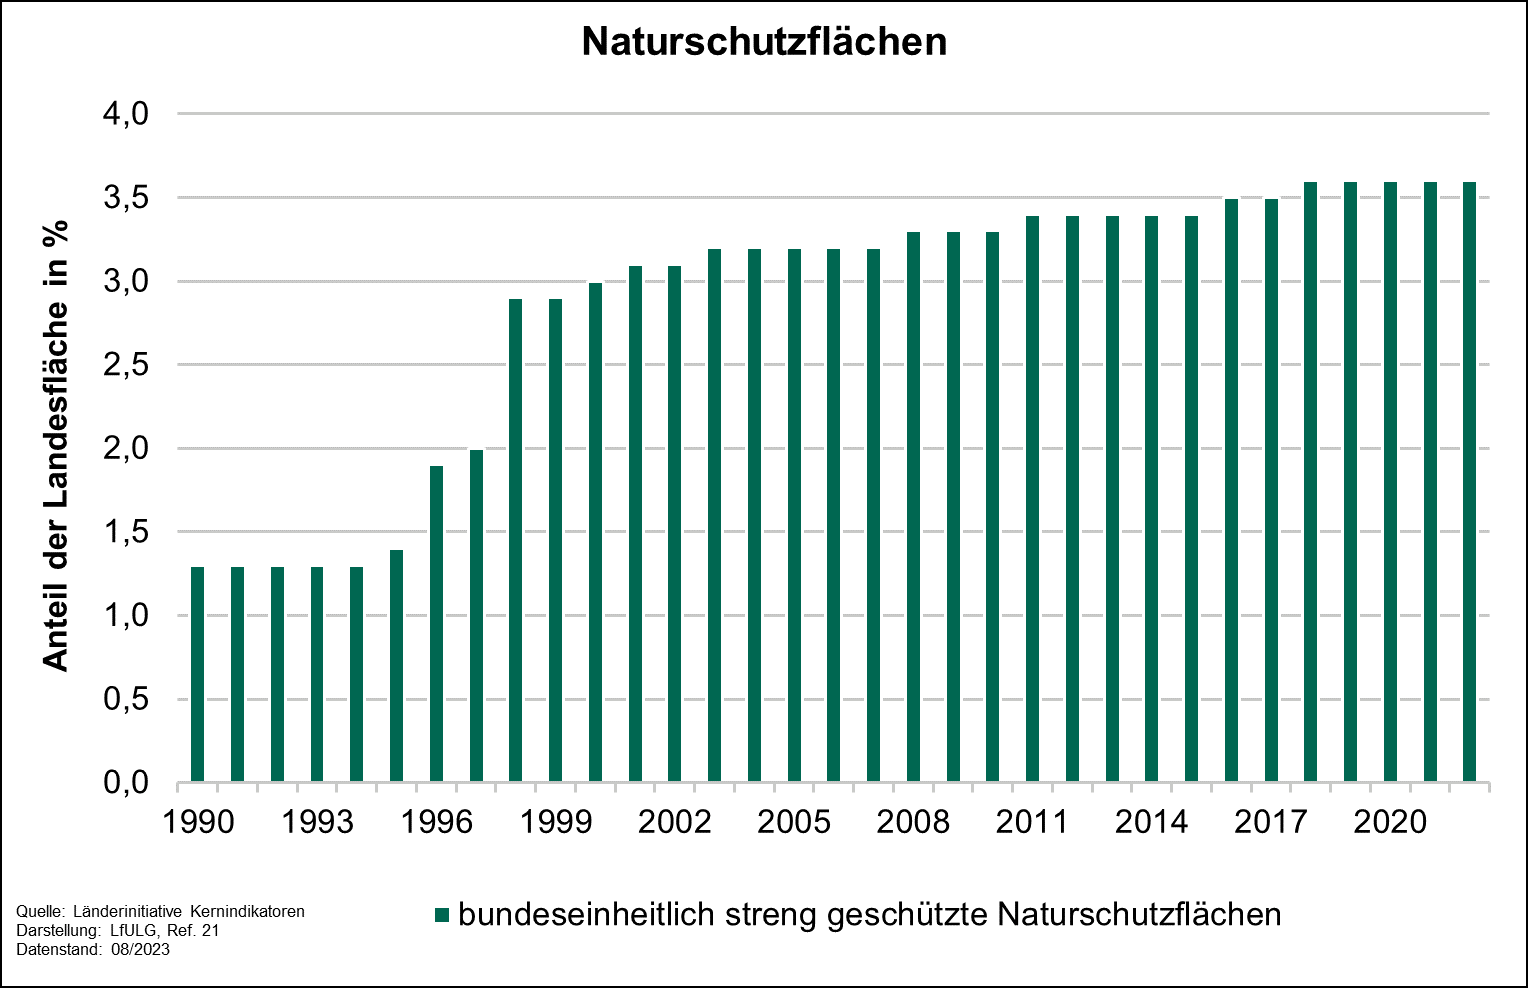 Die Grafik zeigt die Entwicklung des Indikators Naturschutzflächen von 1990 bis 2022. Der Anteil bundeseinheitlich streng geschützter Naturschutzflächen an der Landesfläche stieg in den 1990er Jahren rapide von 1,3 auf 2,9 Prozent.